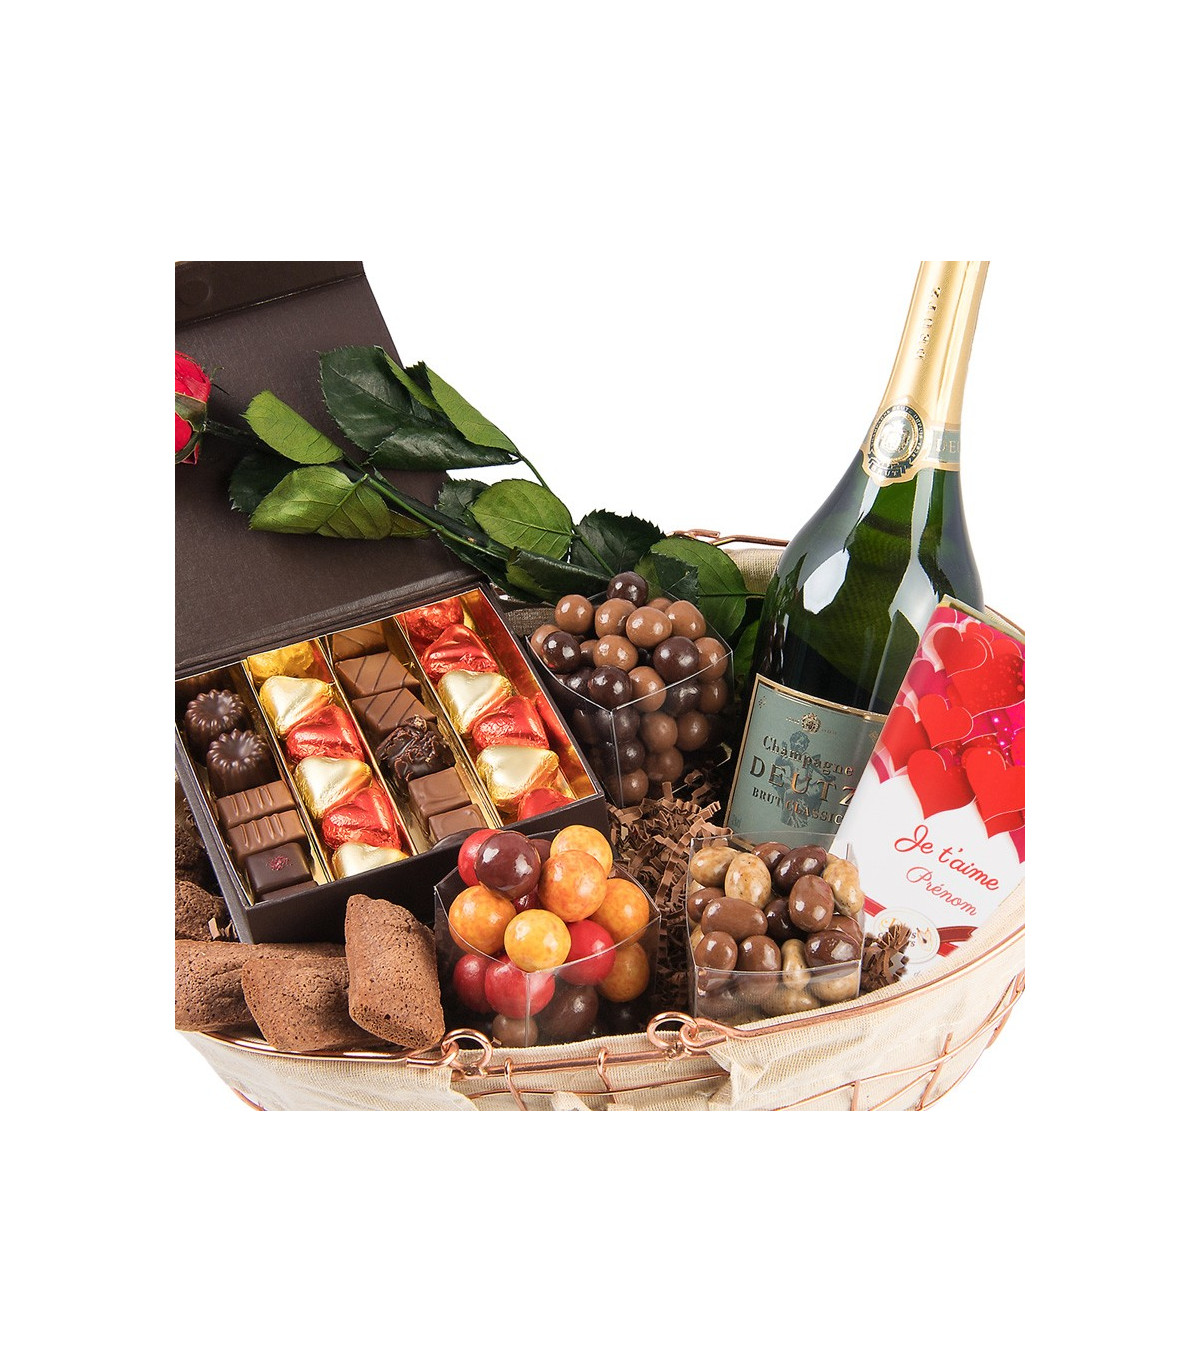 Chocolats saint-valentin - Boutique de chocolat D'lys couleurs